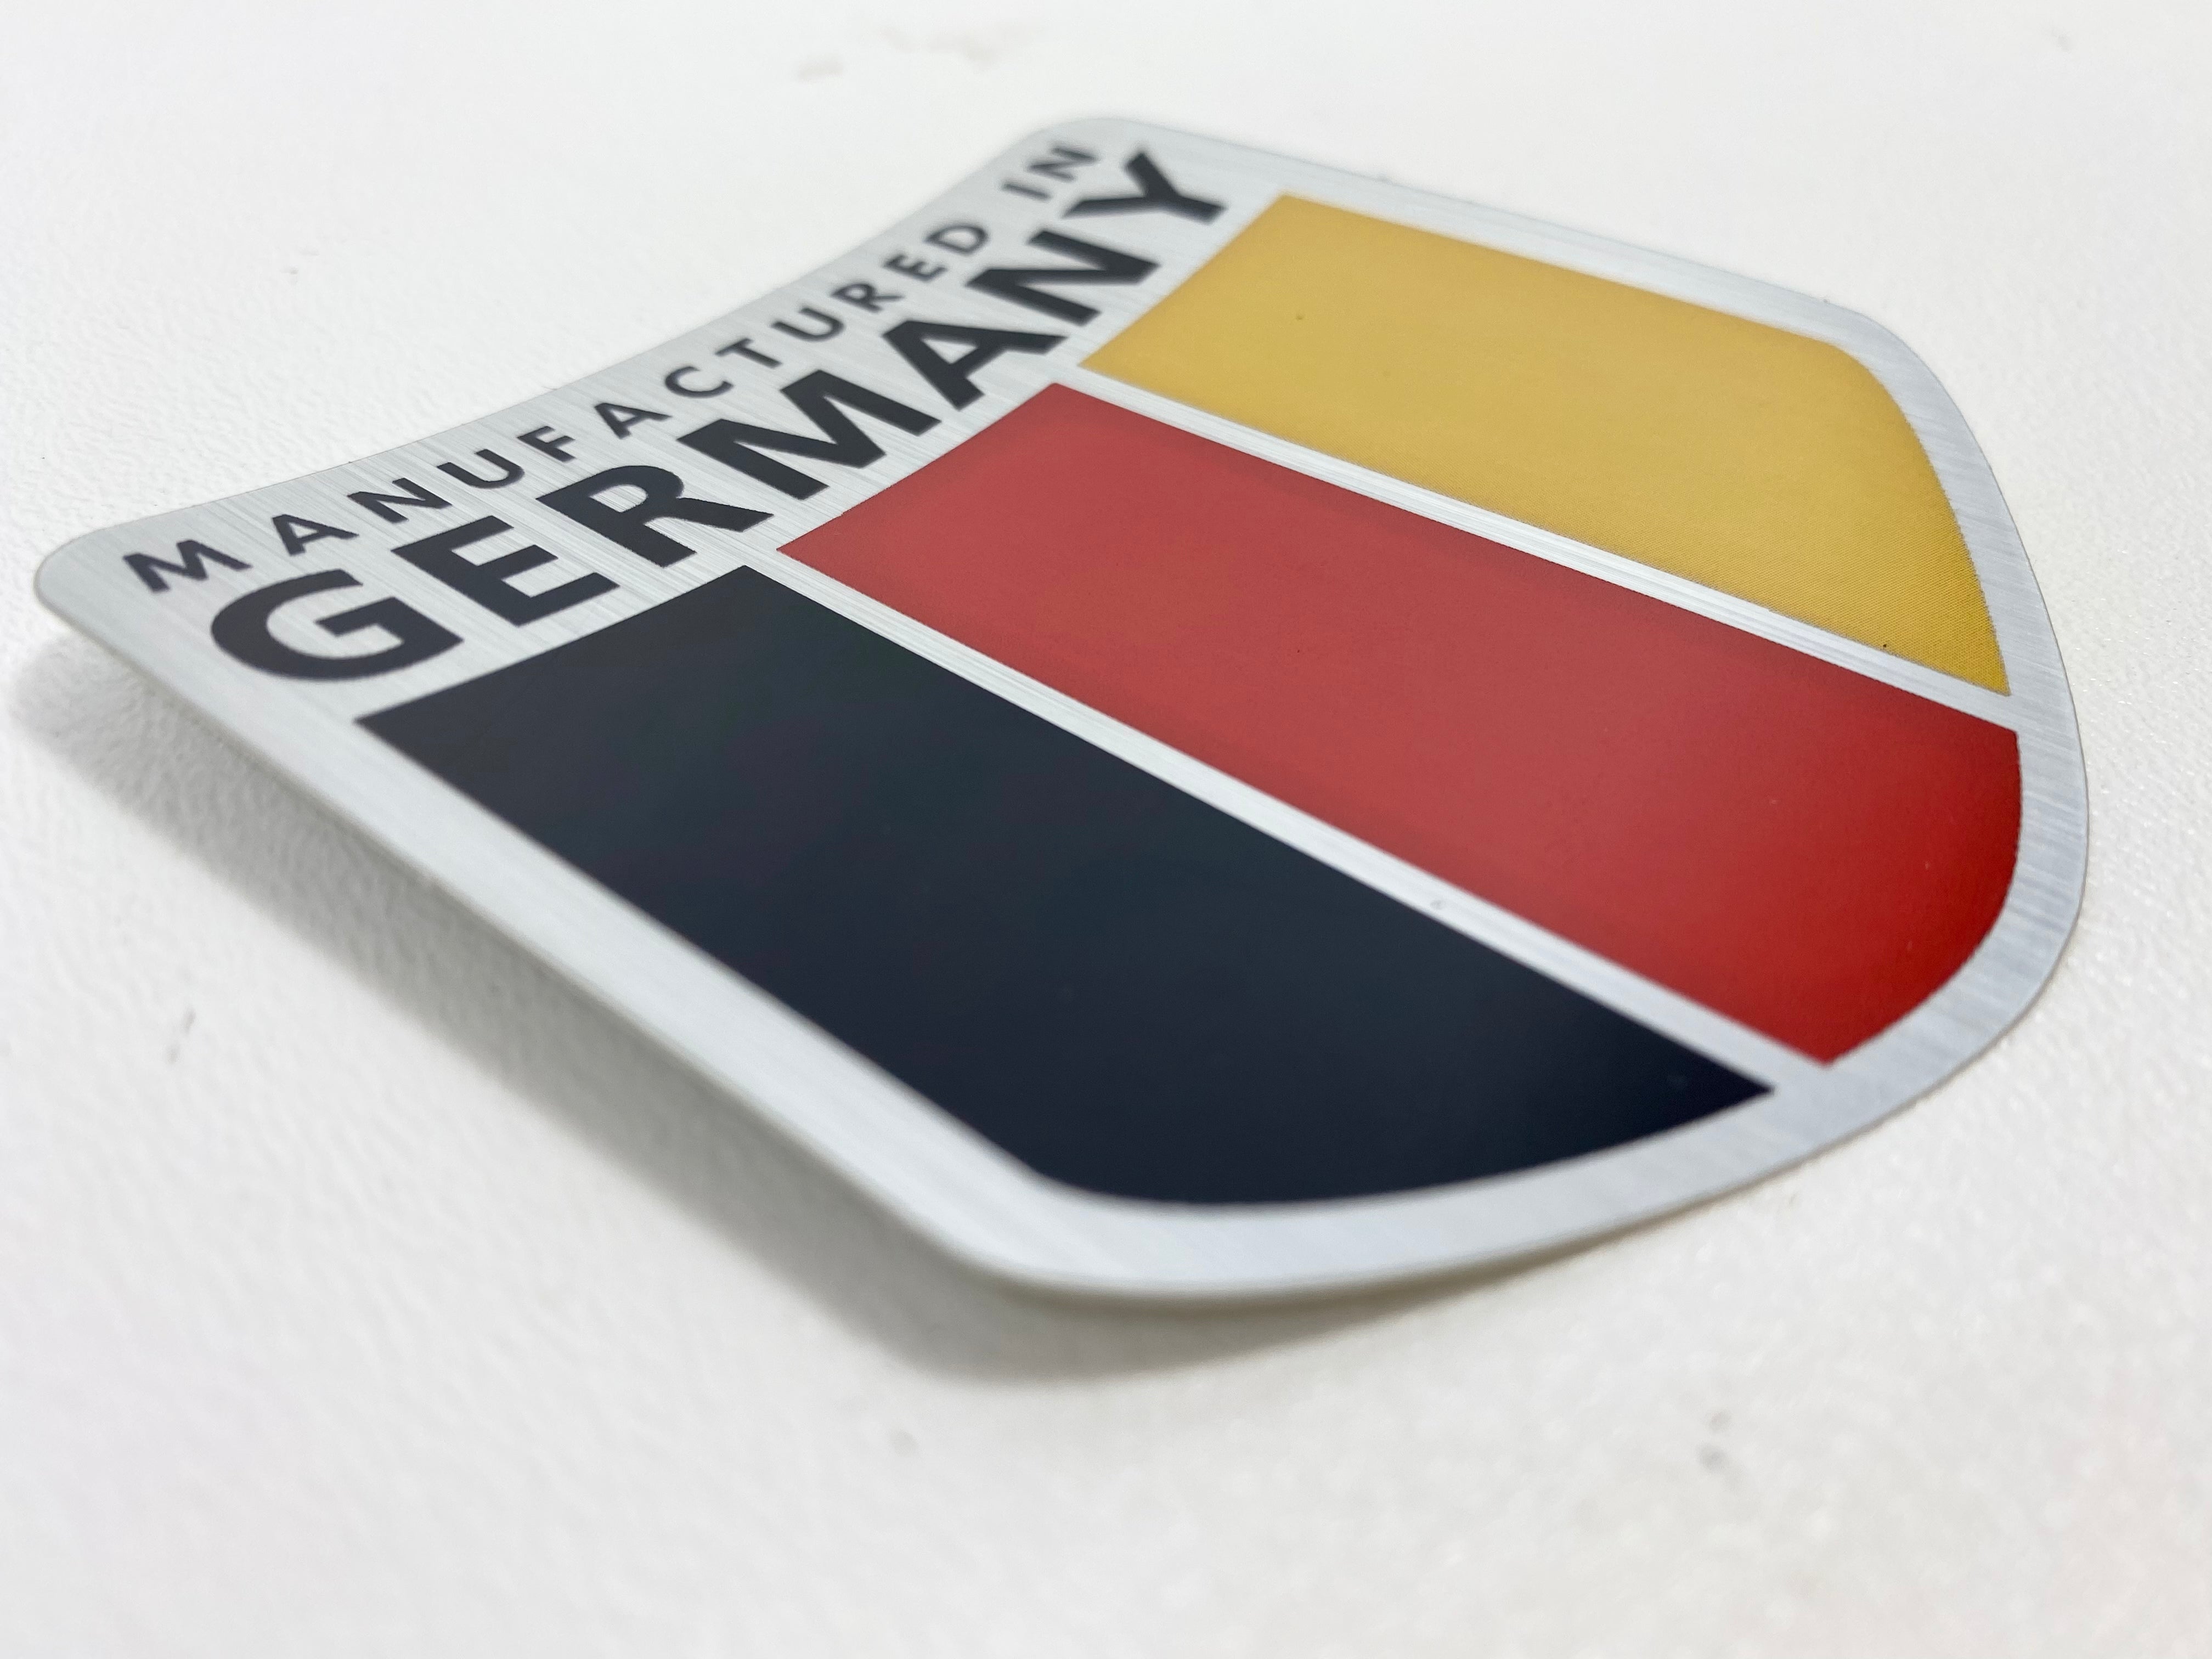 Deutschland Sticker for Sale by NicheBag